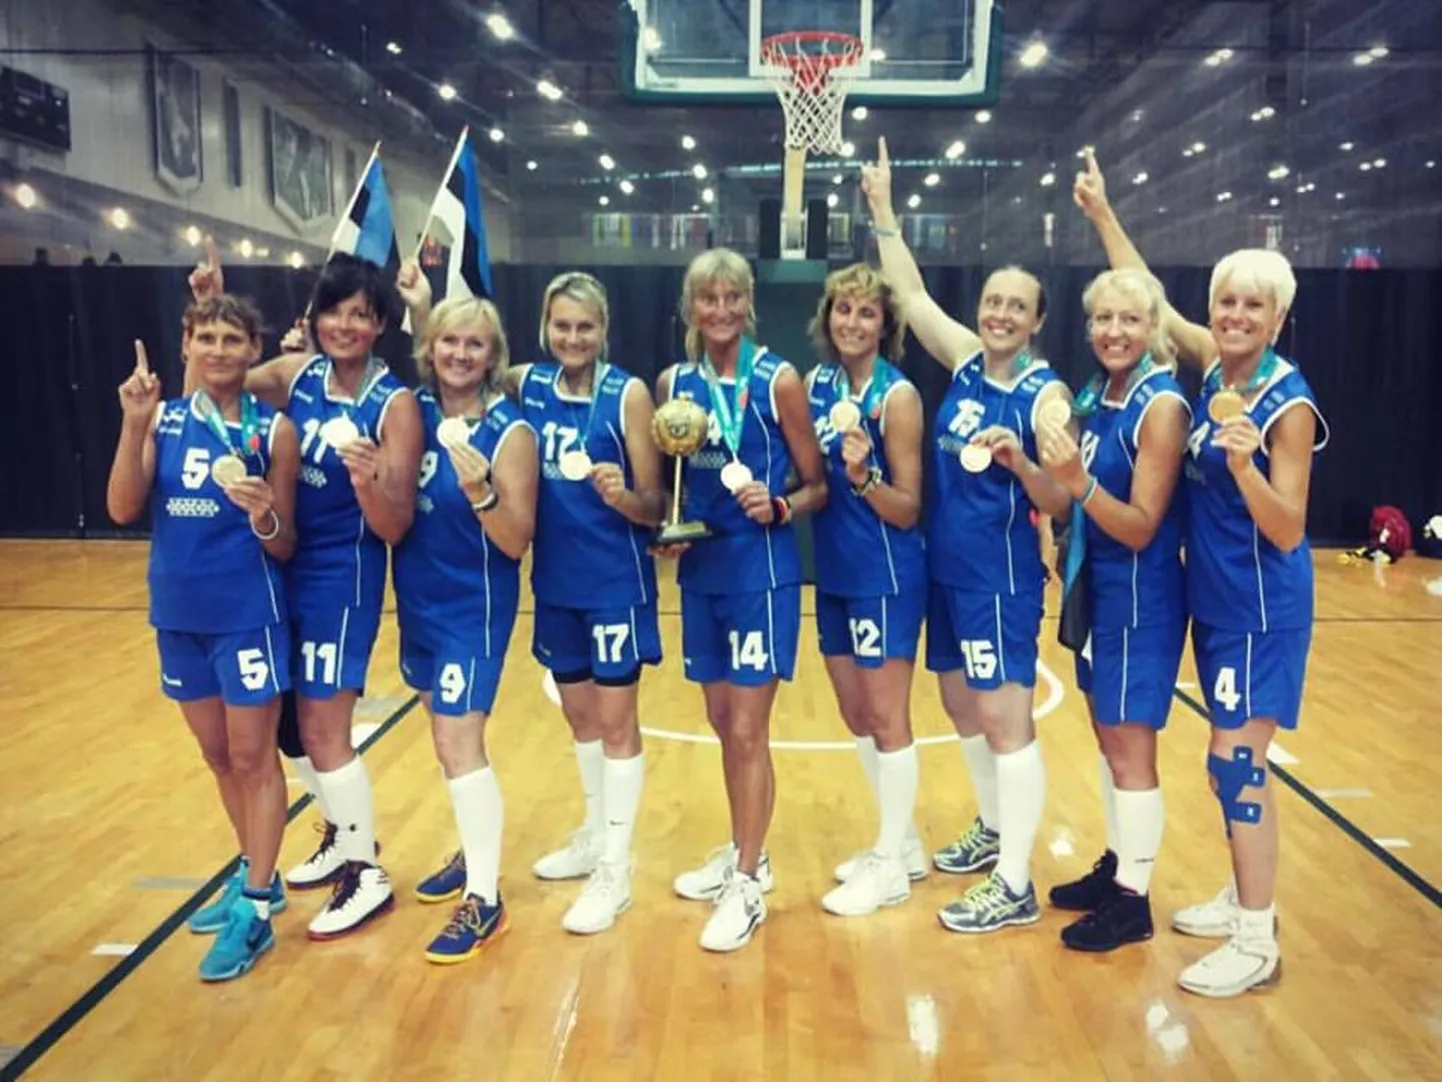 Kulla võitnud Eesti 45+ naiskond koosseisus Helen Hedblom, Ene Ottender, Kersti Petjärv, Margit Konno, Külli Lemberg, Miia Sulg, Pille McKeown, Pille Tali, Marelle Grünthal-Drell.